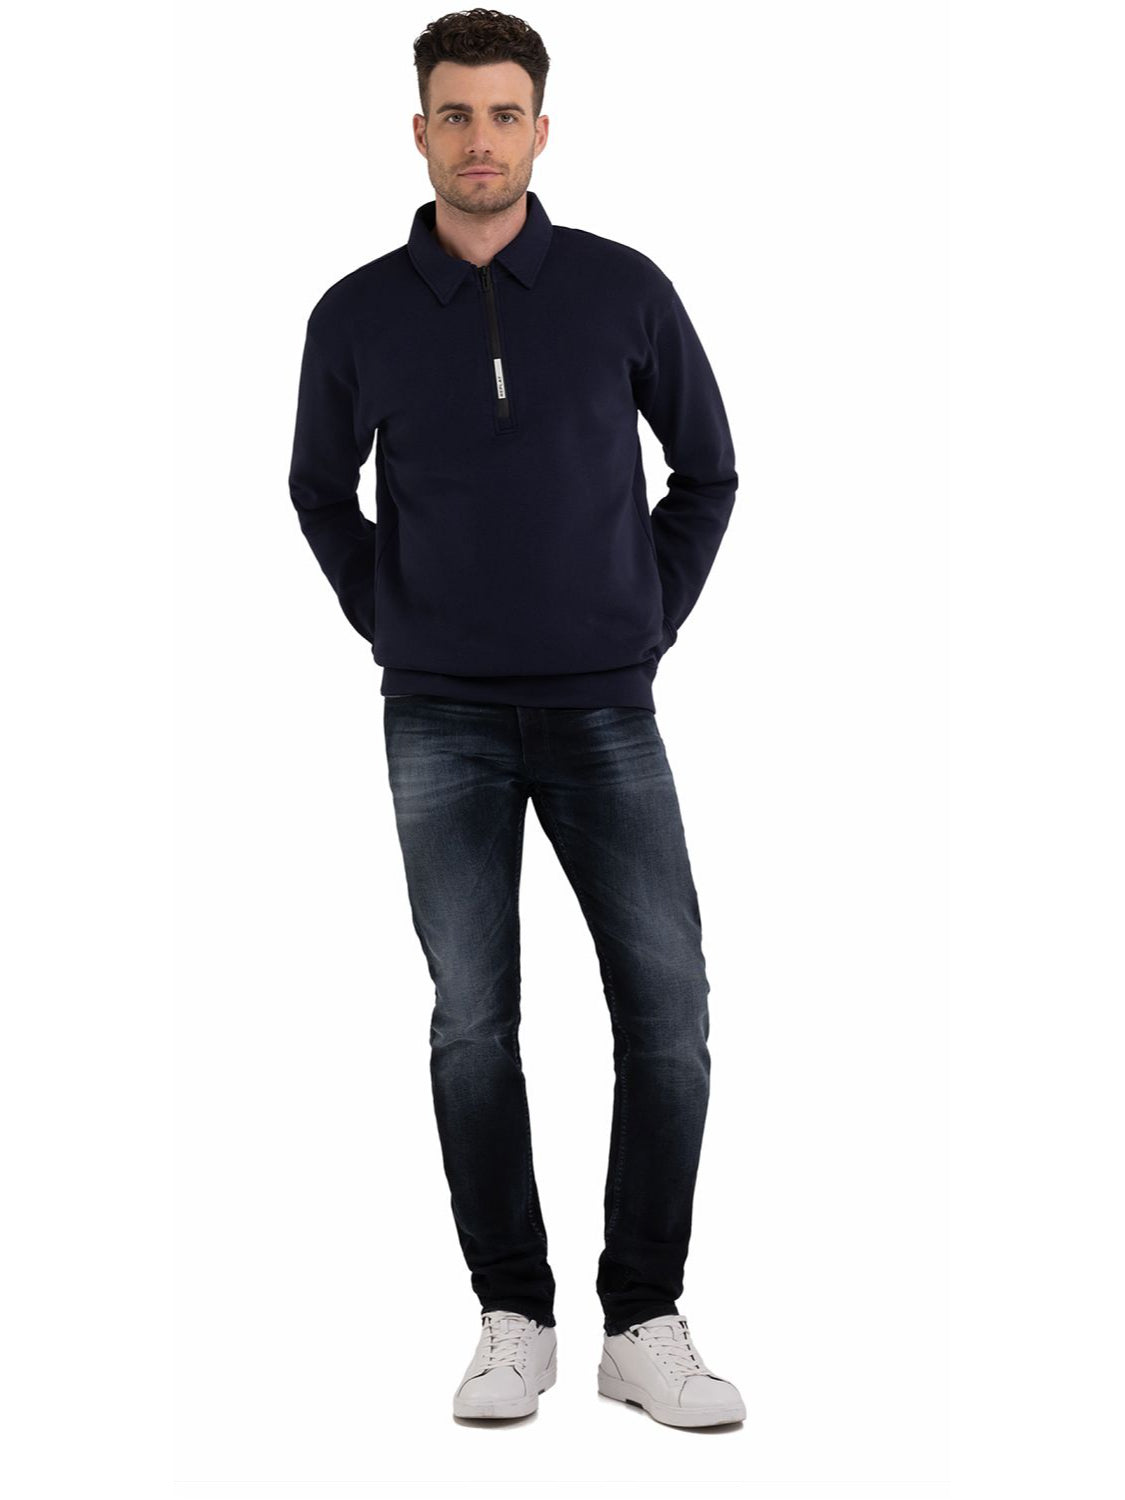 Half-zipper Sweatshirt